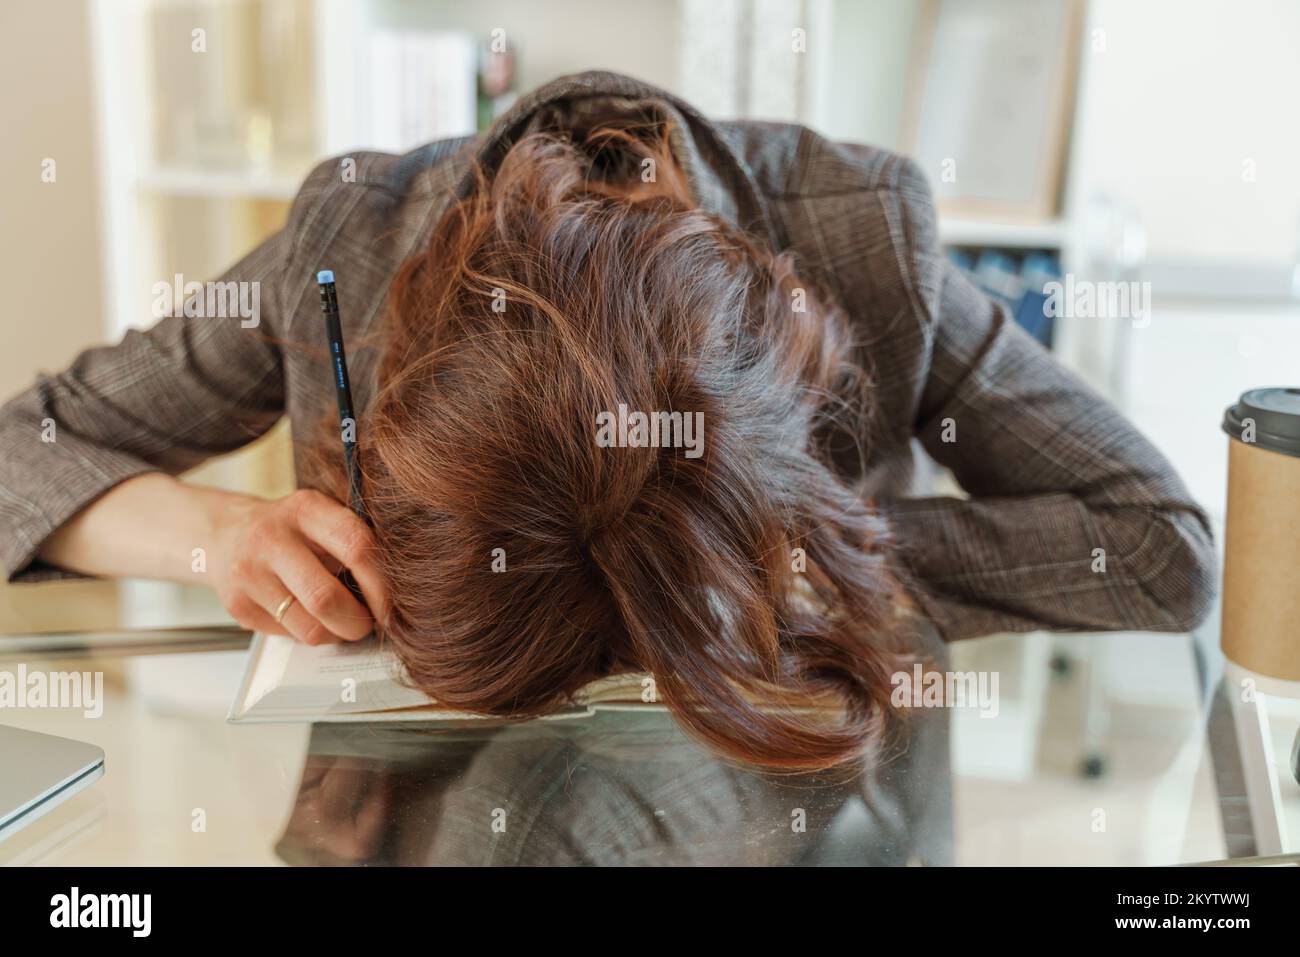 La femme est fatiguée. Une jeune femme fatiguée a mis sa tête sur la table, une travailleuse fatiguée ou une étudiante s'étant épuisée sur la table à la maison Banque D'Images